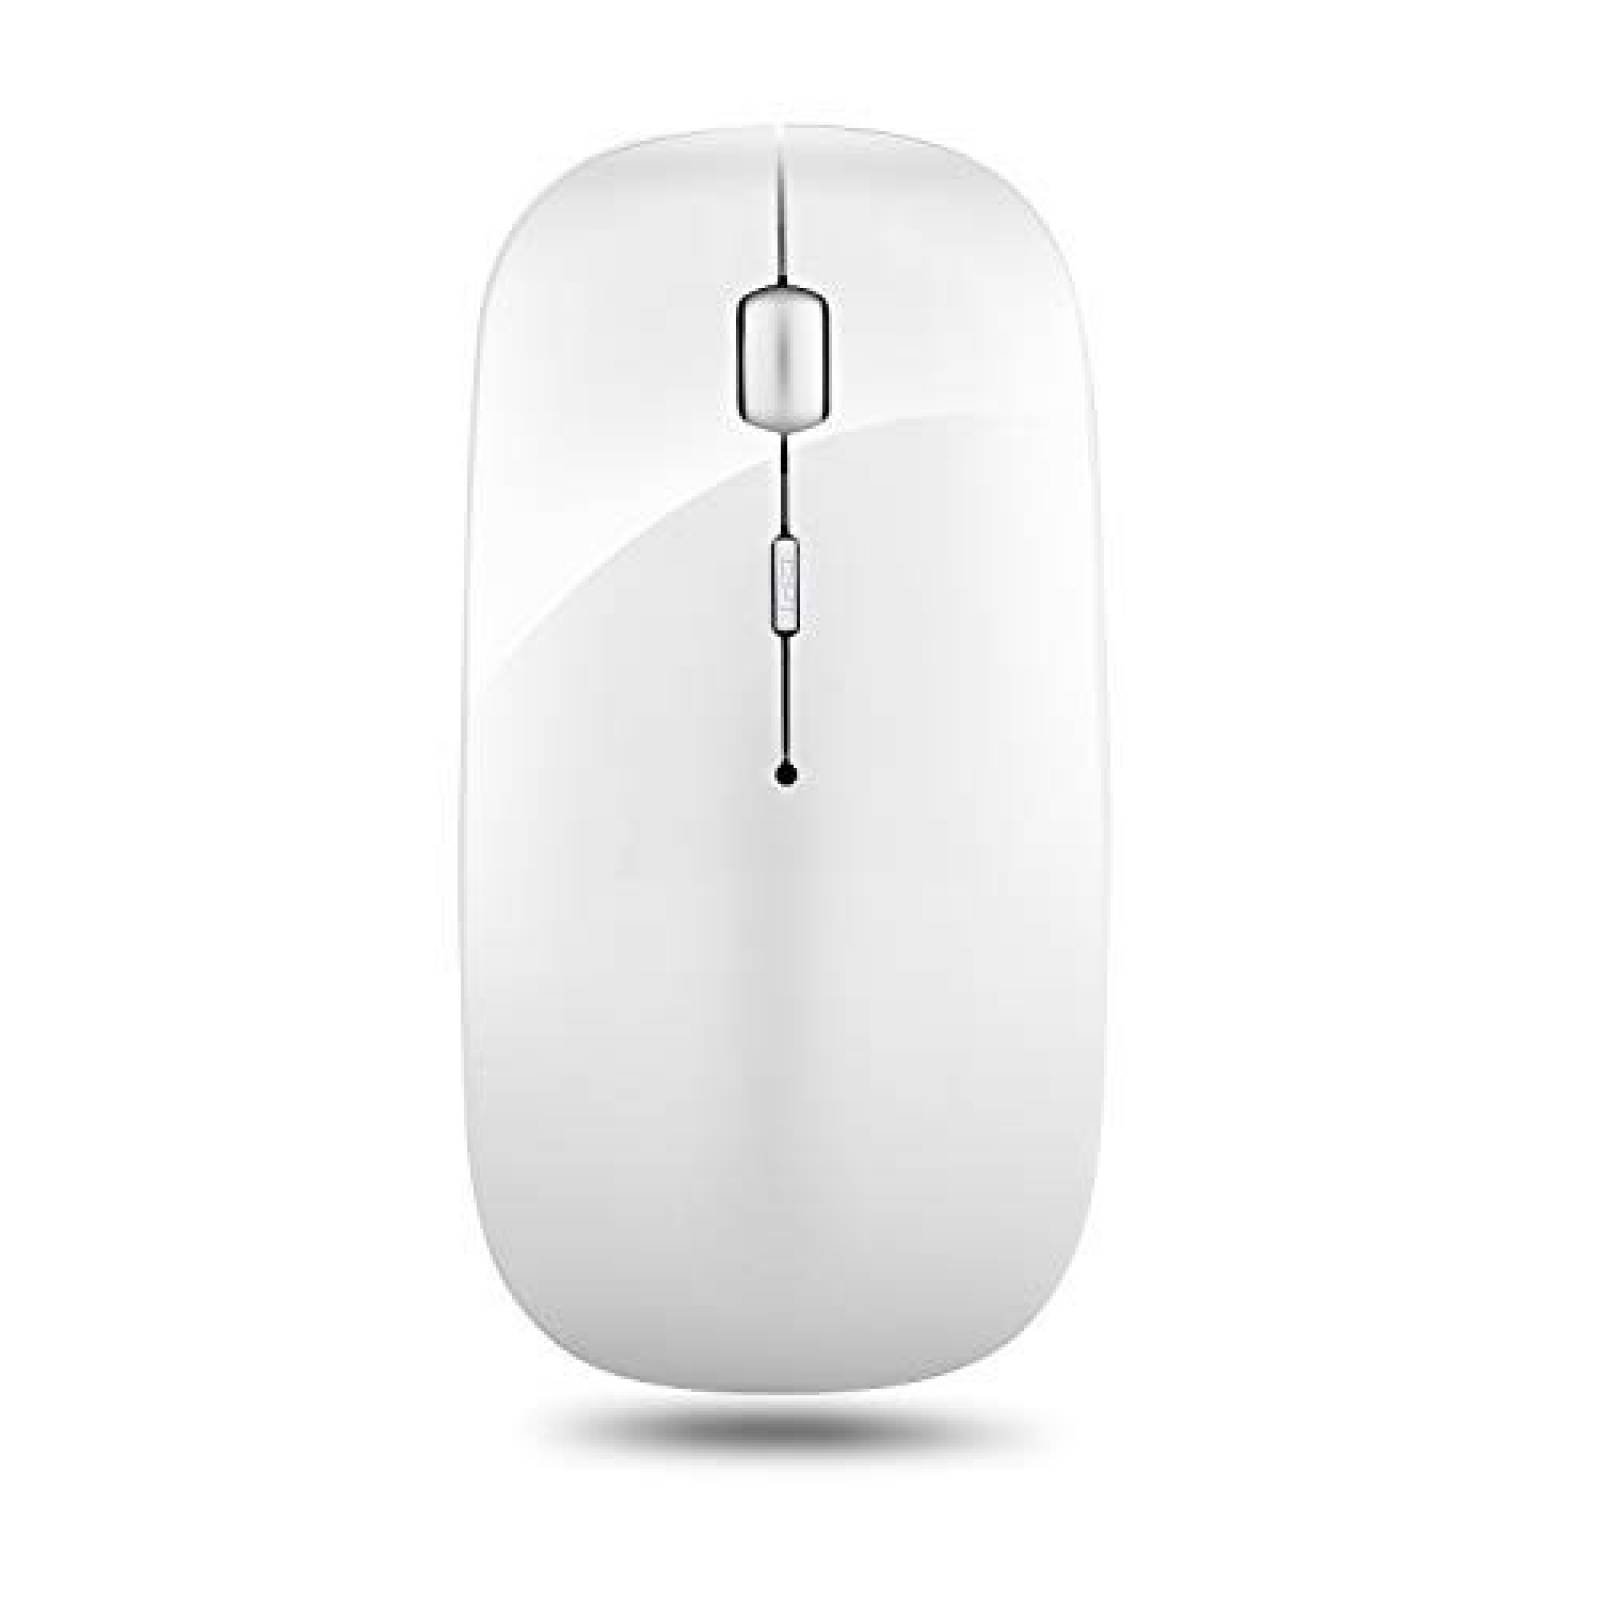 Mouse inalámbrico leibaolong 2.4GHz USB recargable -Blanco